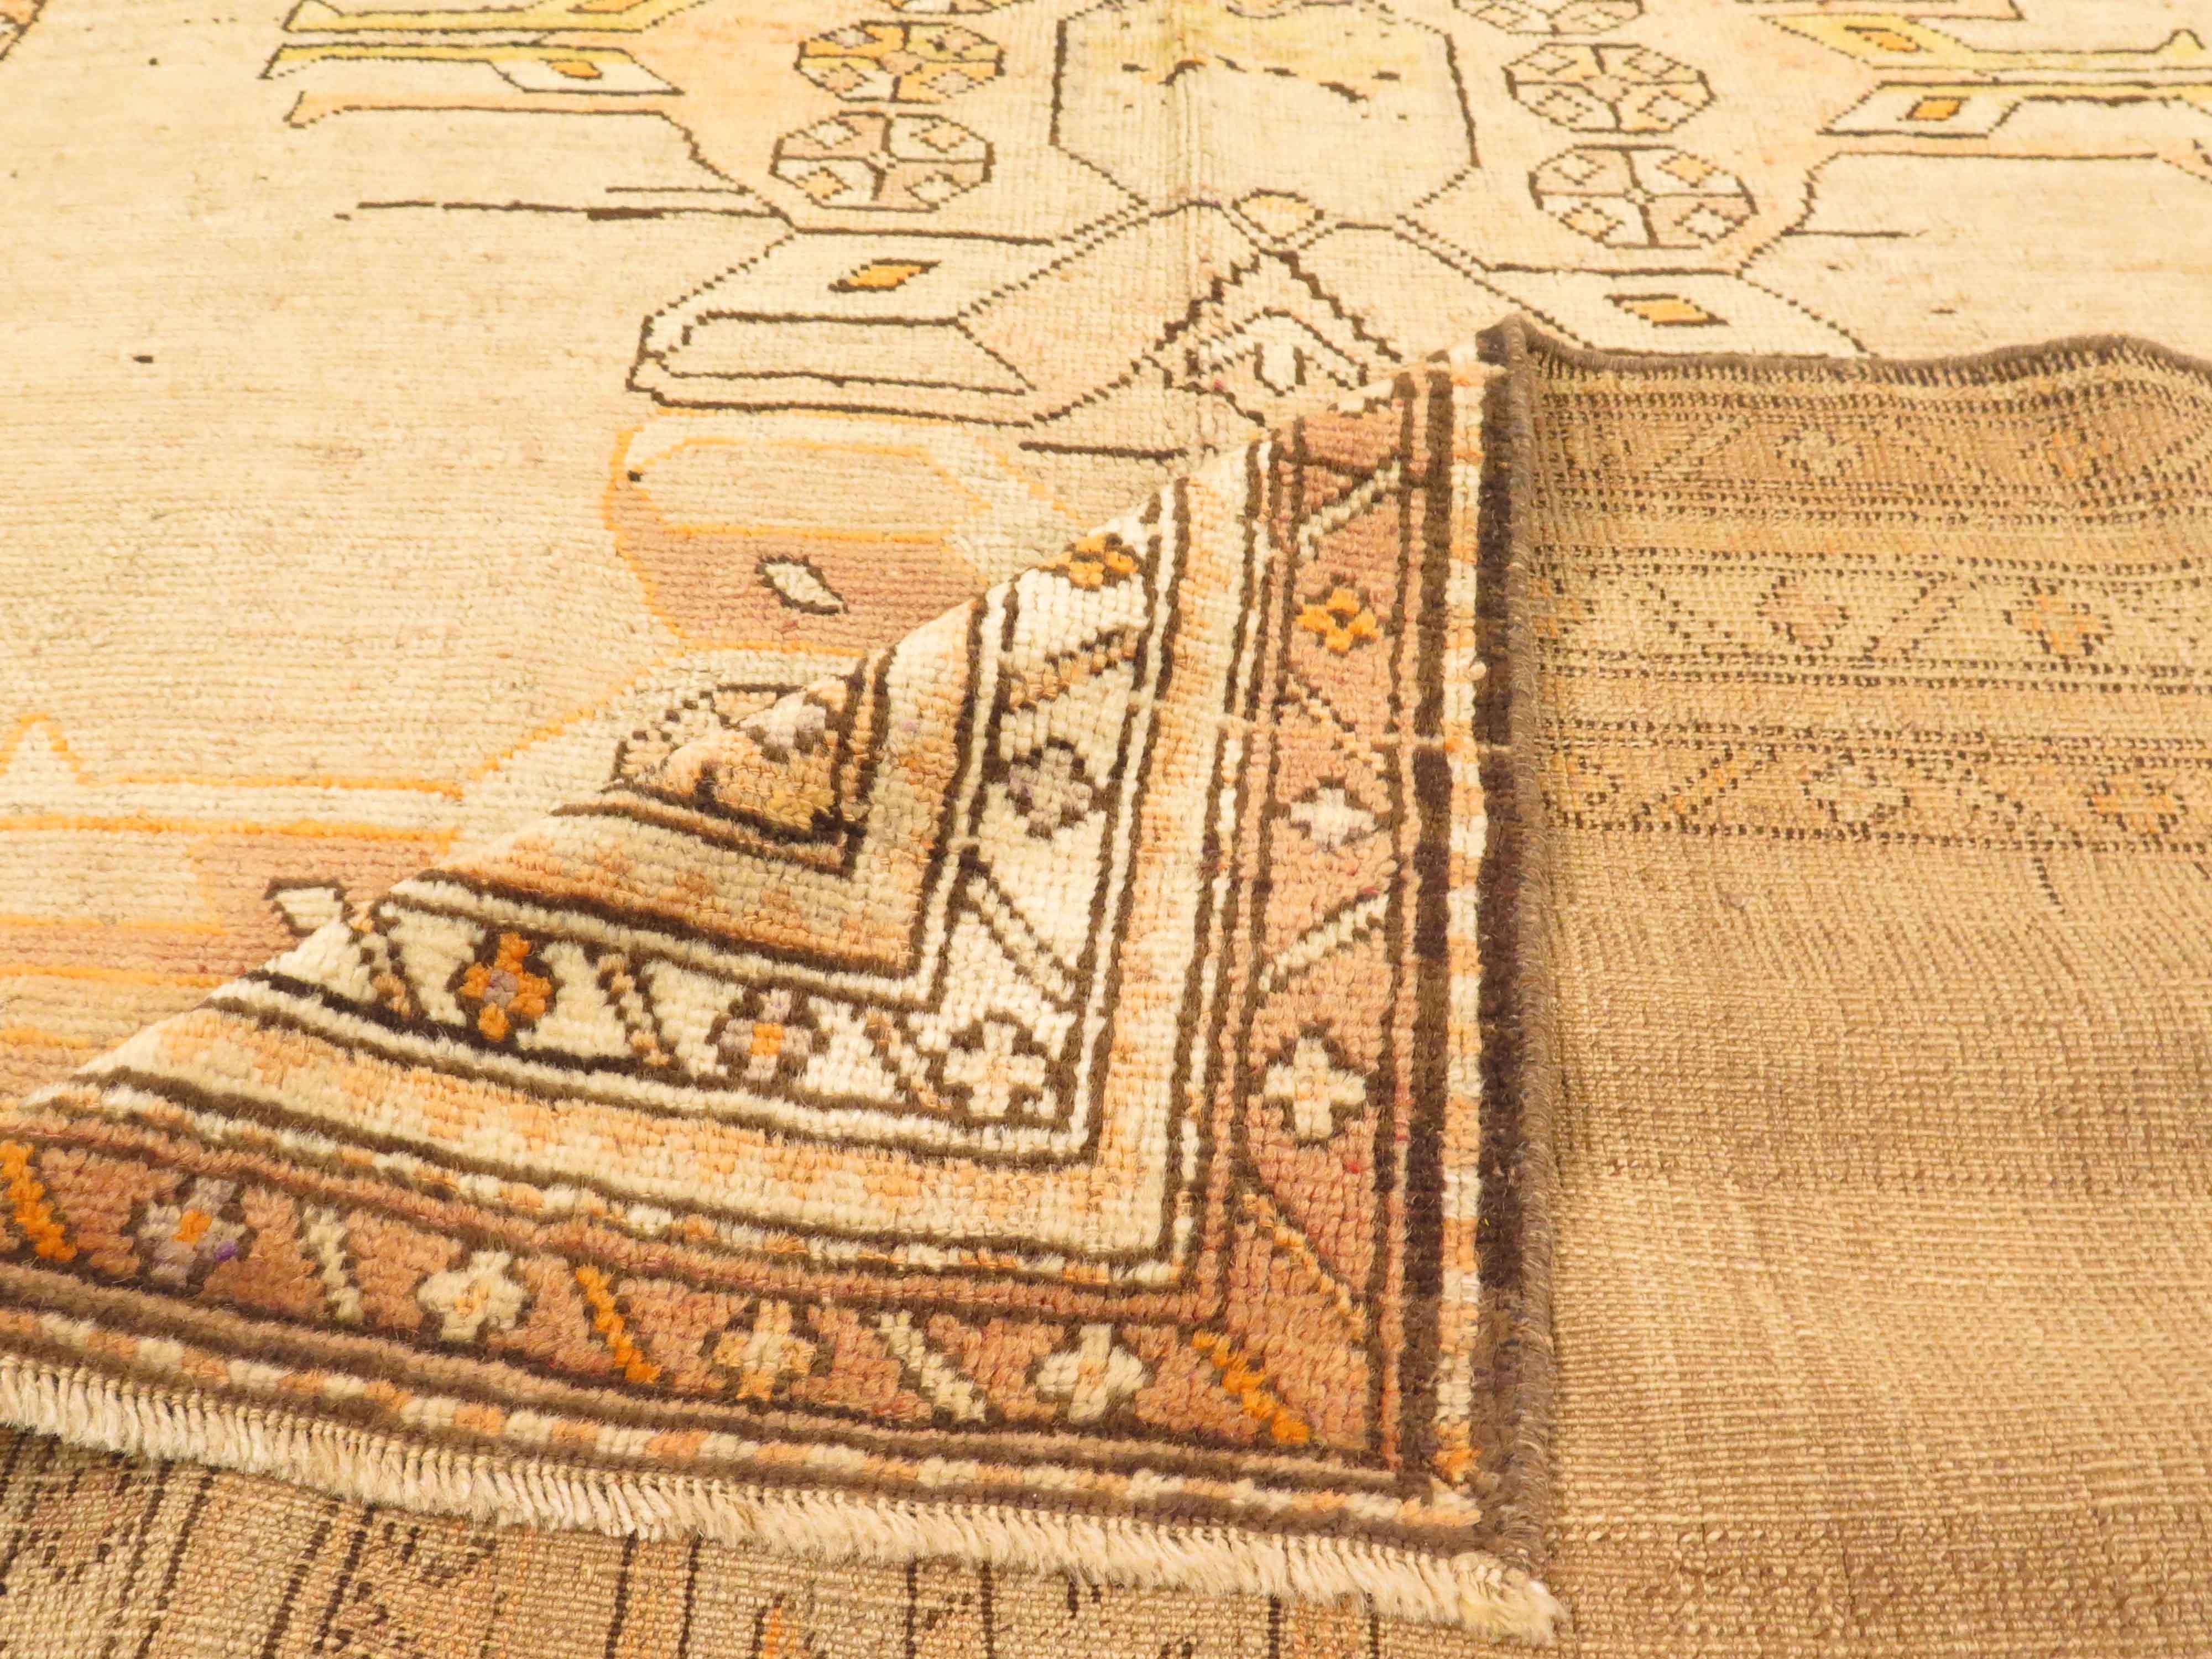 Antiker russischer Teppich, handgewebt aus feinster Schafswolle und gefärbt mit natürlichen Pflanzenfarben, die für Menschen und Haustiere unbedenklich sind. Es ist ein traditionelles kasachisches Design mit Skarabäus-Medaillons in Beige und Schwarz